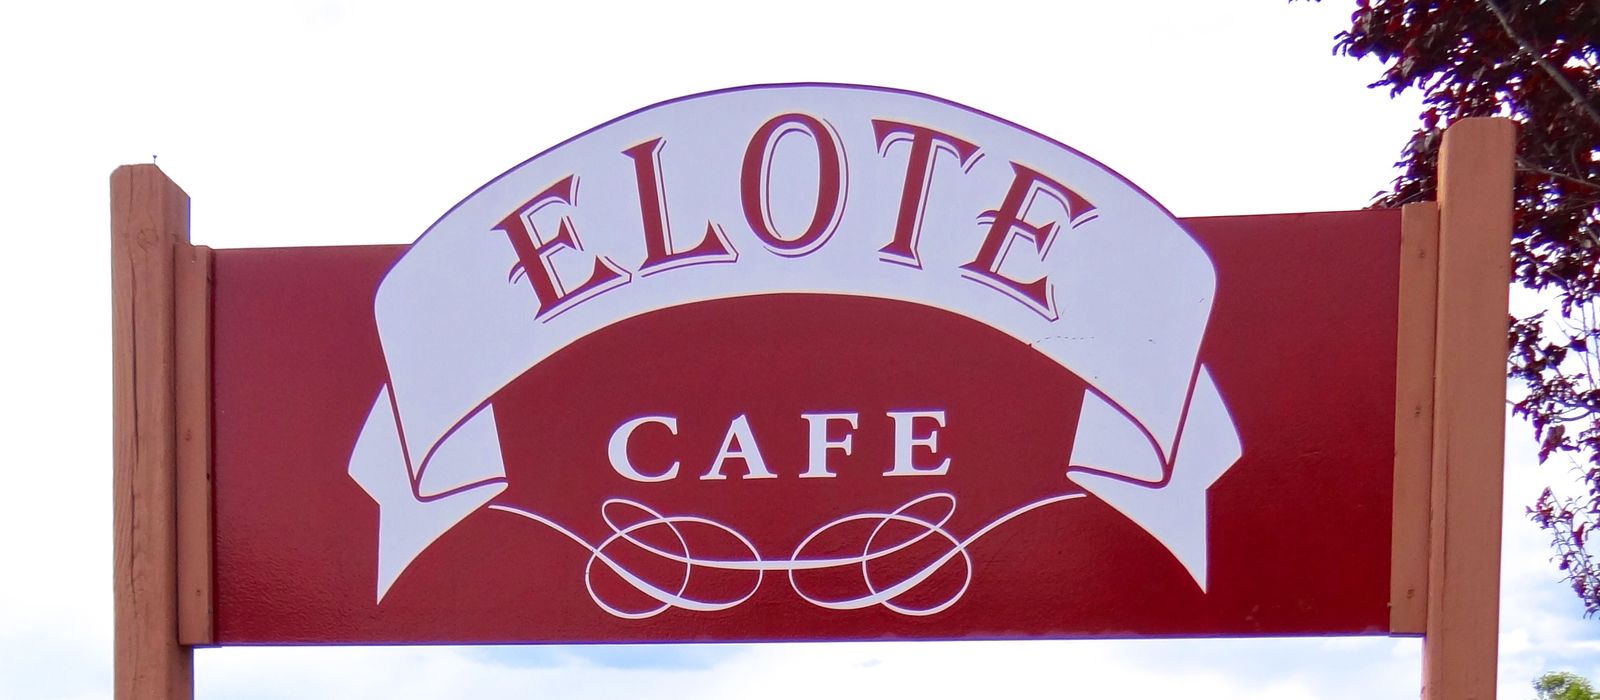 Elote Cafe Schild